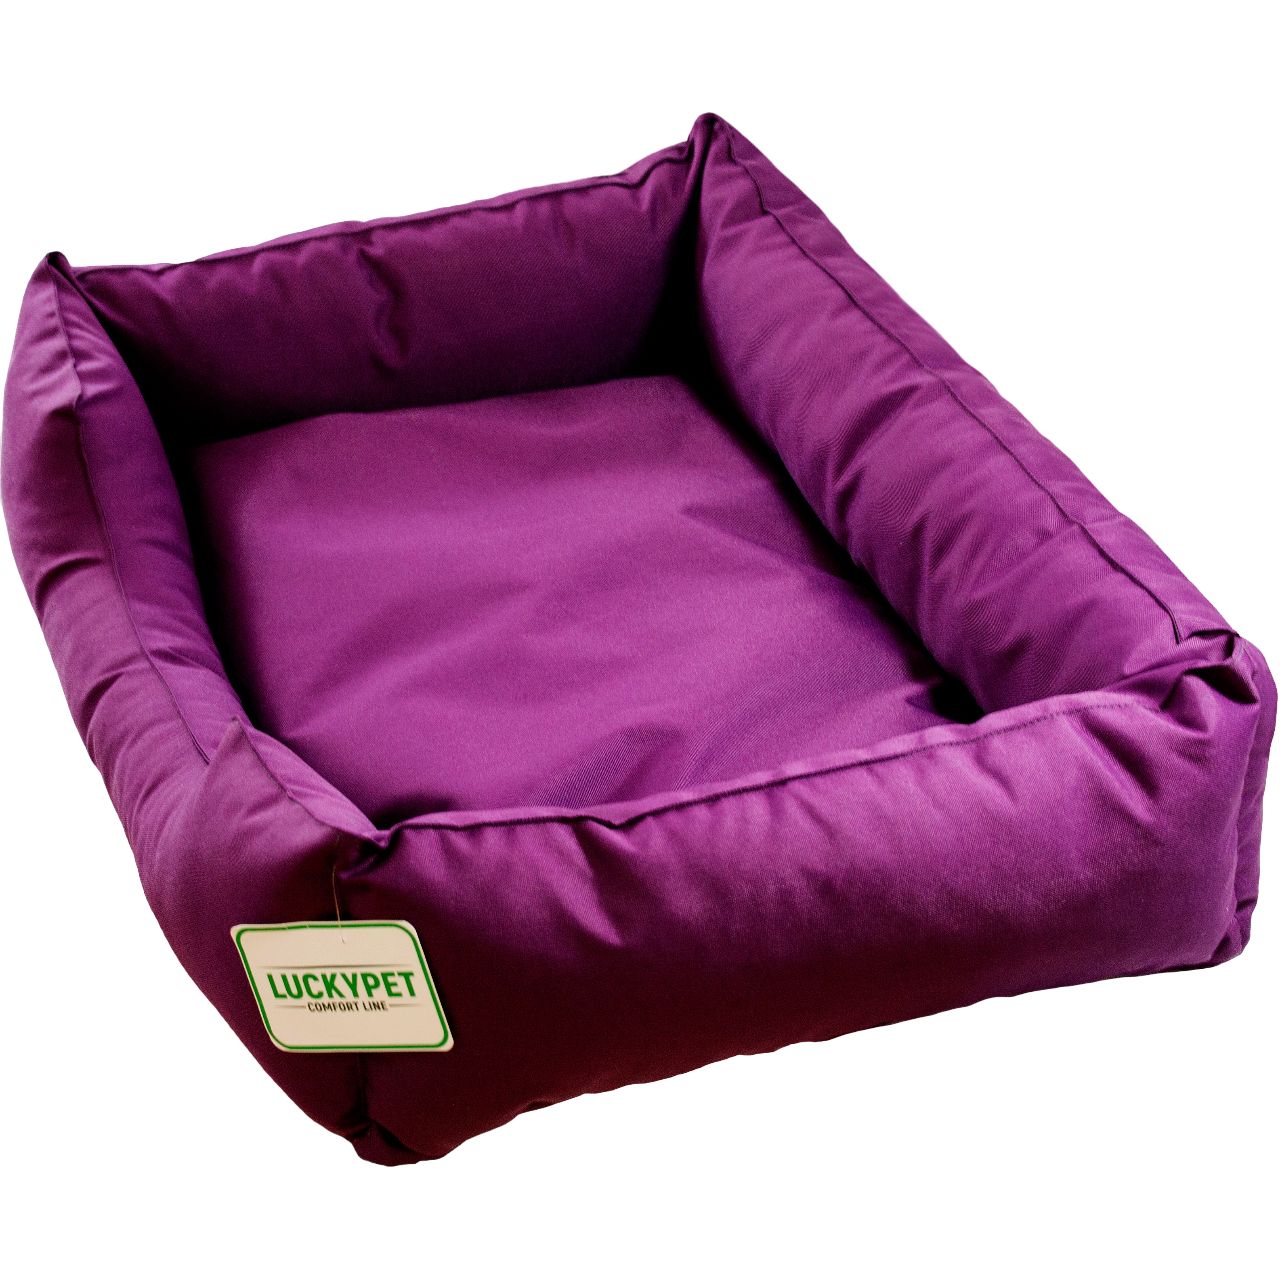 Лежак Lucky Pet Маркіз №3, 50x70x20 см, фіолетовий - фото 1